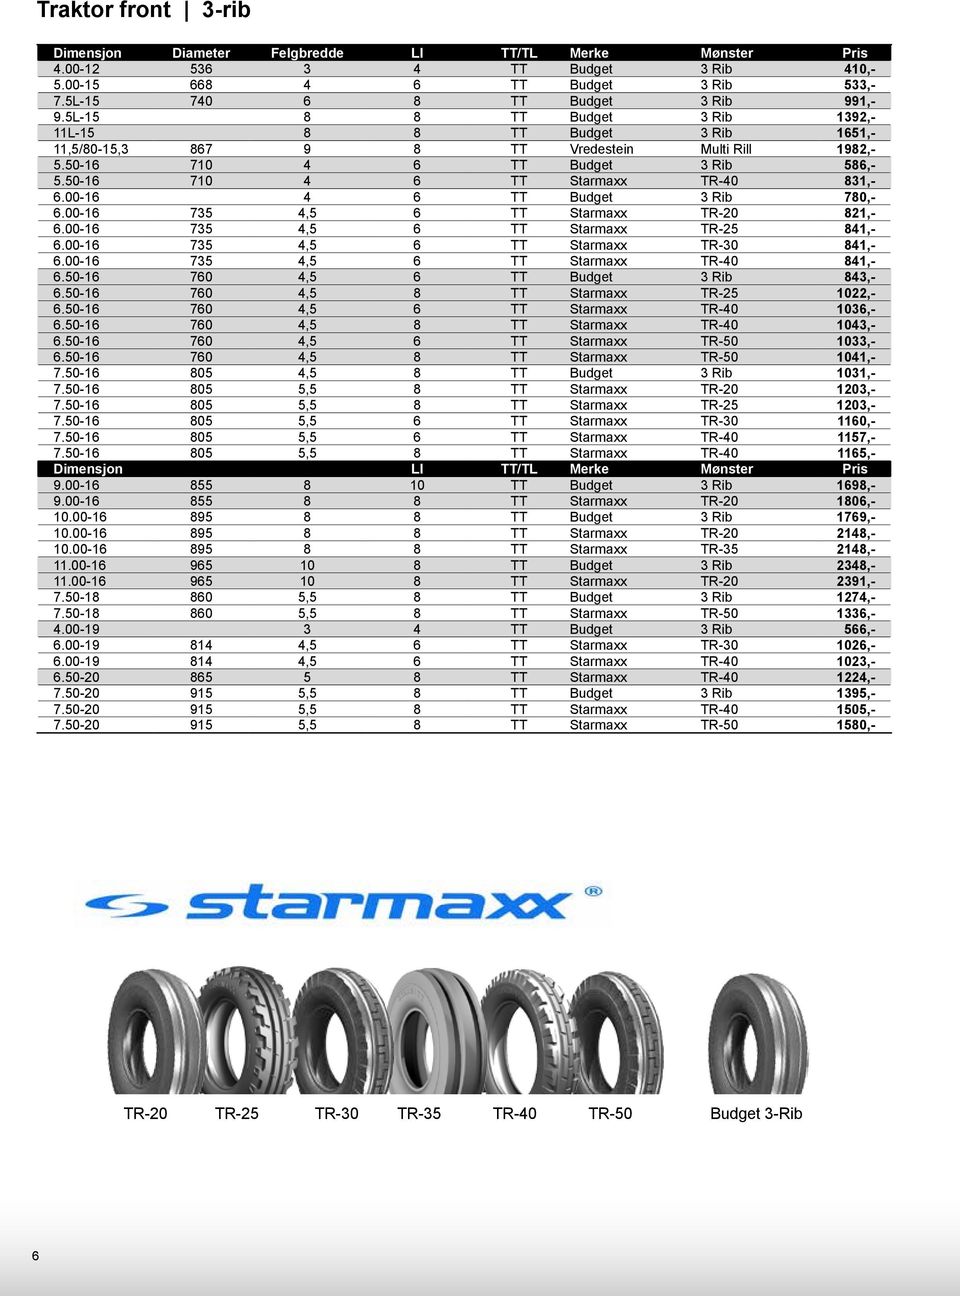 00-16 4 6 TT Budget 3 Rib 780,- 6.00-16 735 4,5 6 TT Starmaxx TR-20 821,- 6.00-16 735 4,5 6 TT Starmaxx TR-25 841,- 6.00-16 735 4,5 6 TT Starmaxx TR-30 841,- 6.